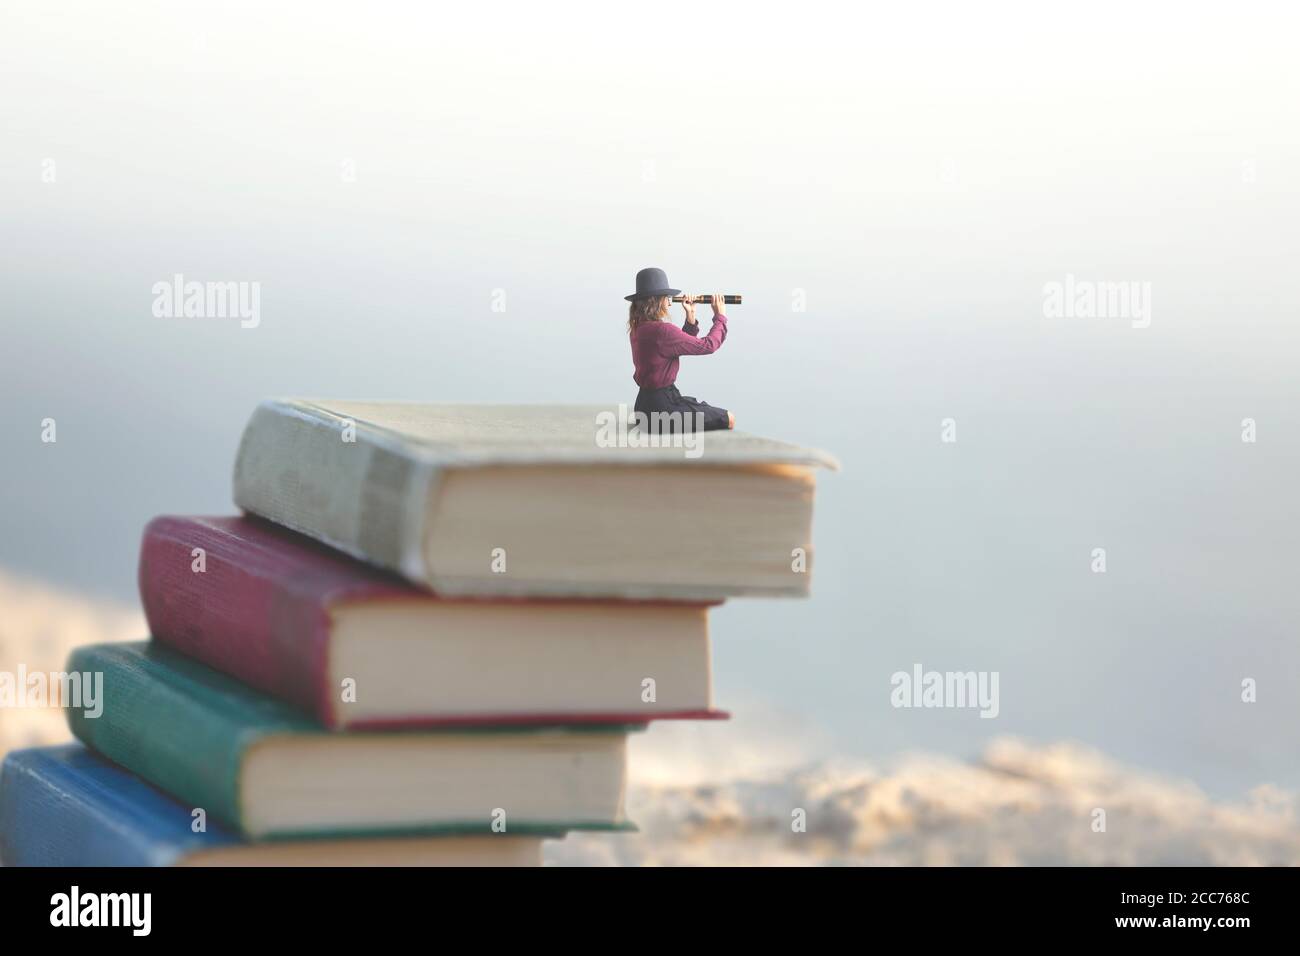 la mujer en miniatura mira al infinito con el vaso de aguja encendido una escala de libros Foto de stock